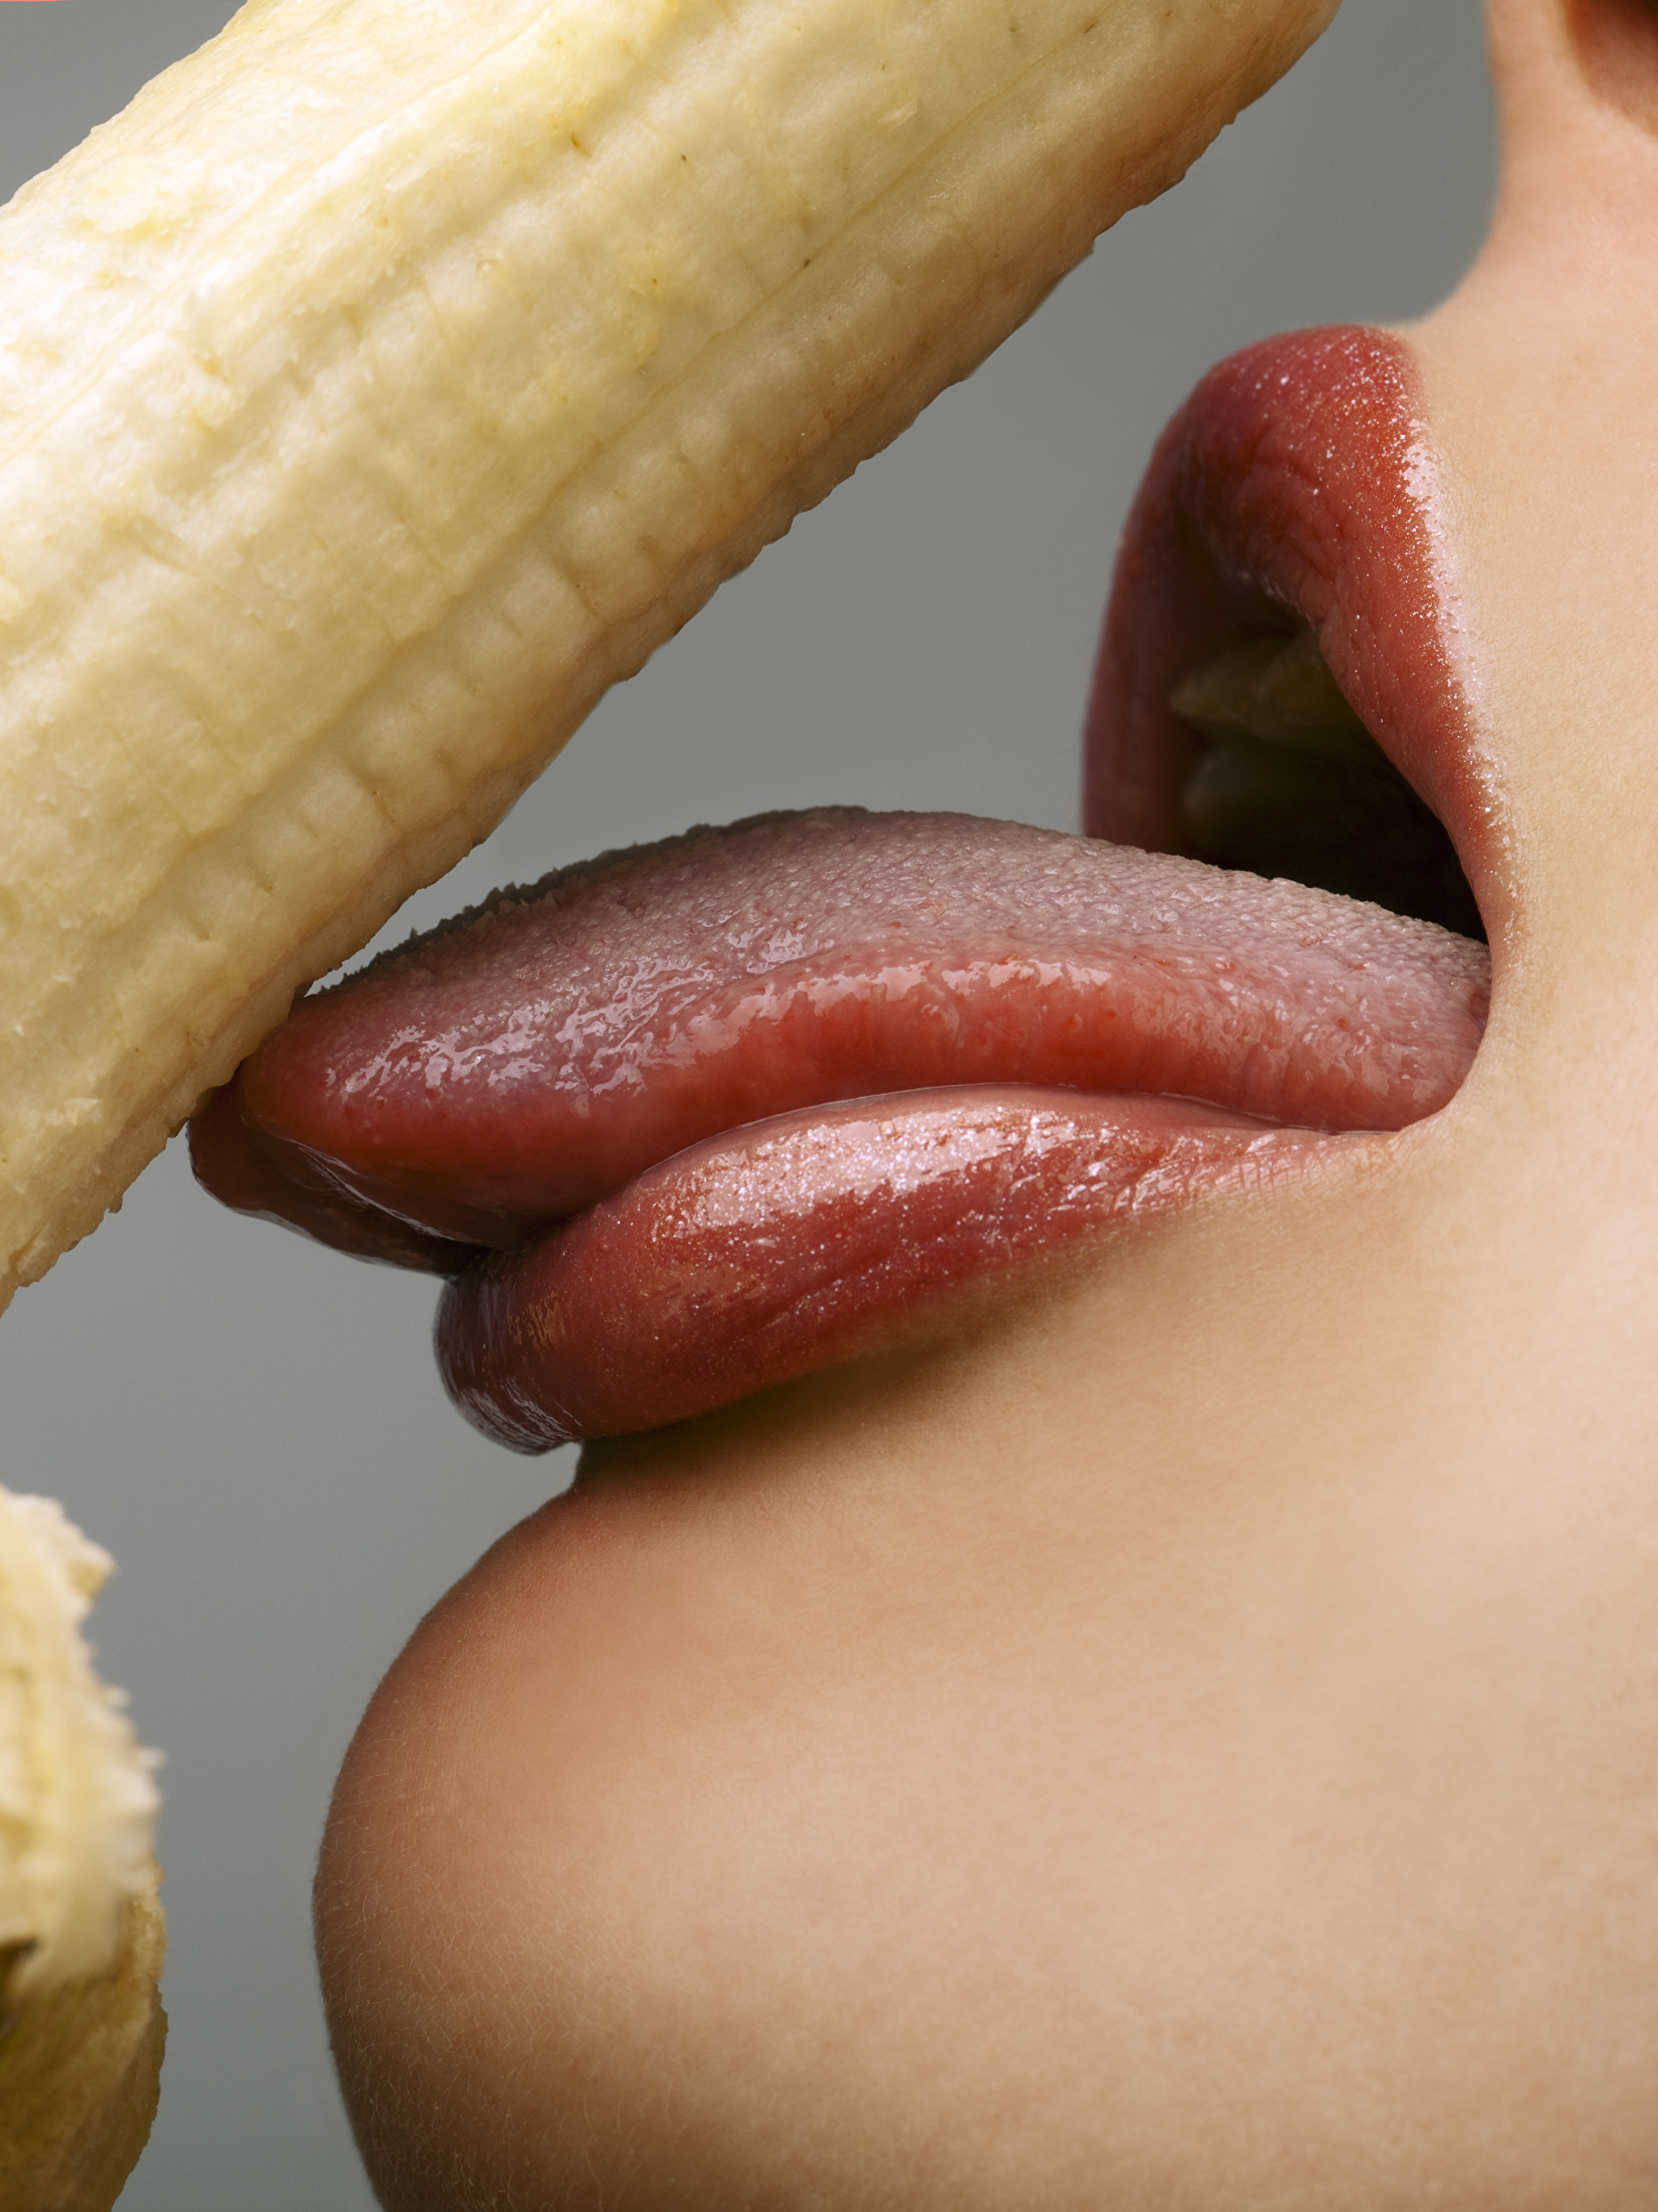 Отсос вконтакте. Девушка с бананом. Губы и банан. Девушка с бананом во рту. Девушка с языком.